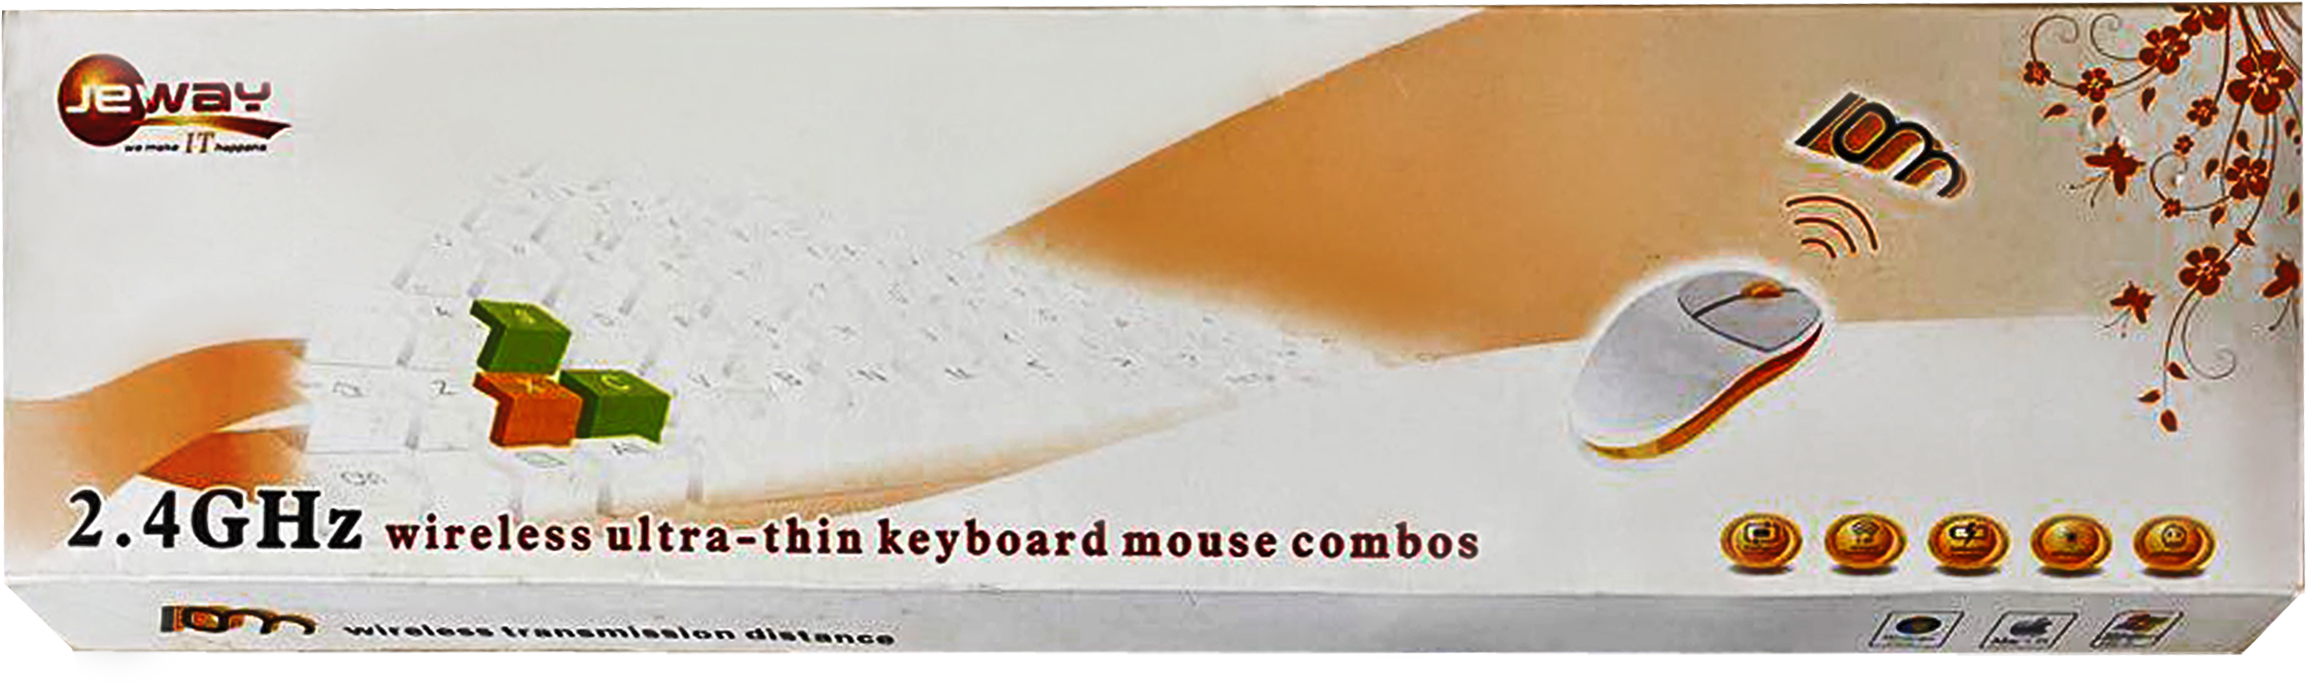 JEWAY JK 8223 Wireless Keyboard Mouse Combo